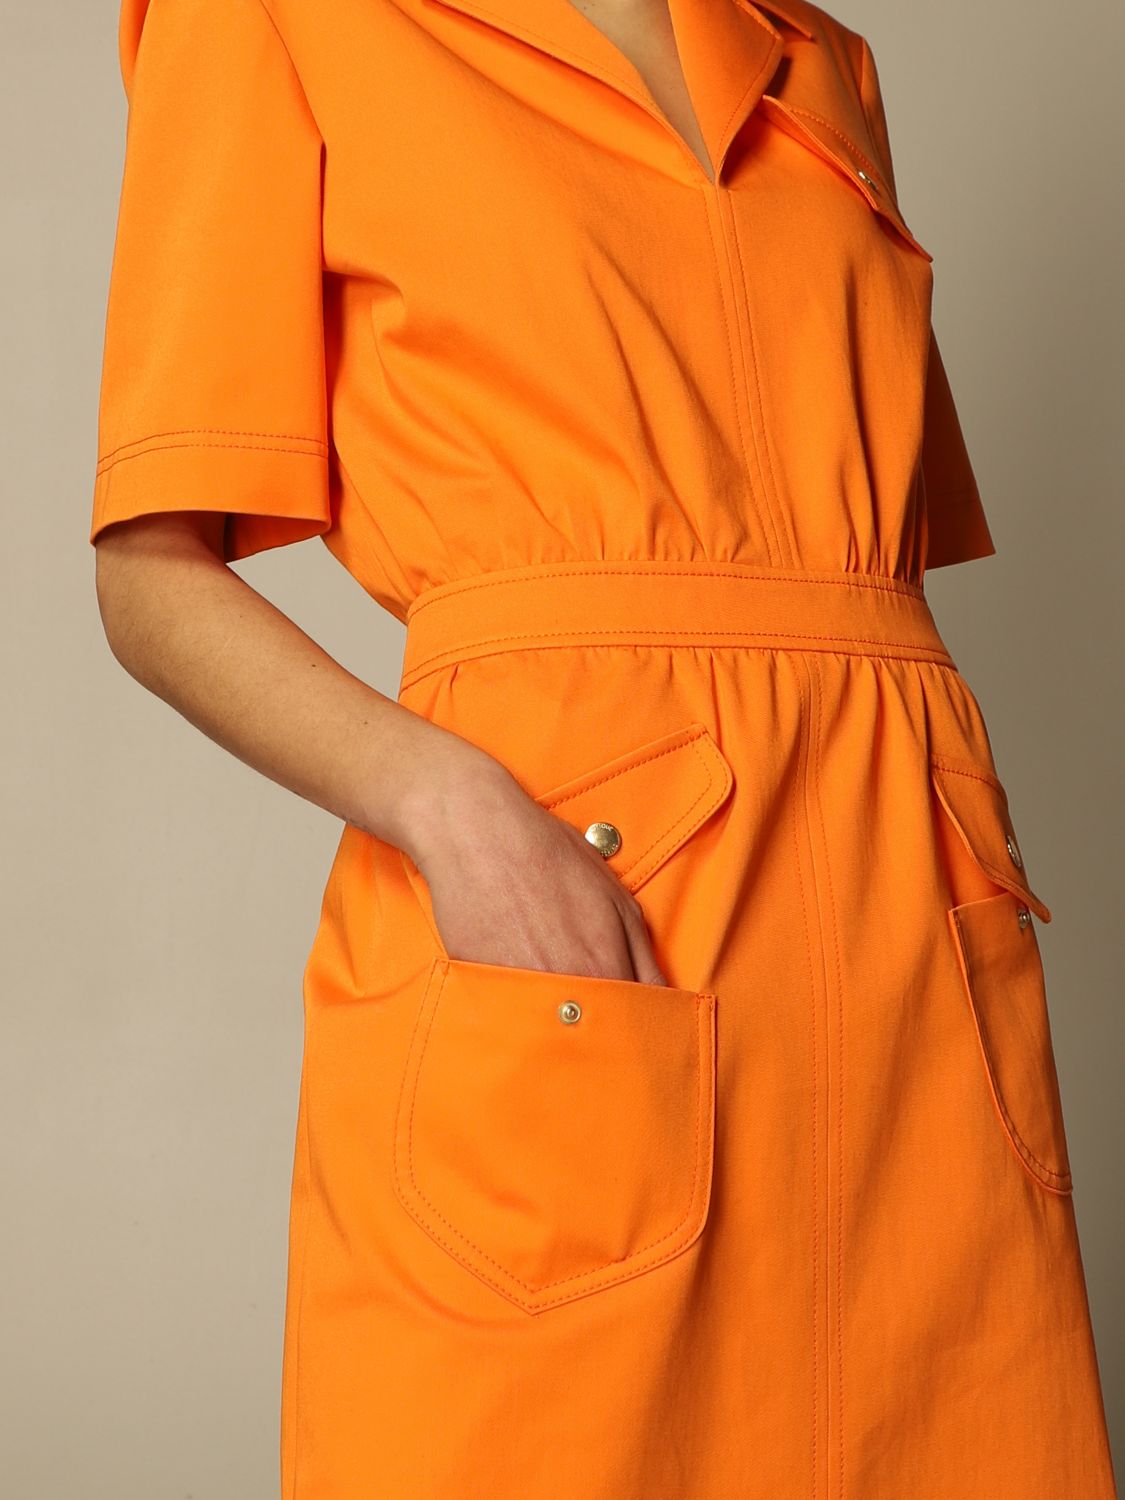 moschino orange dress